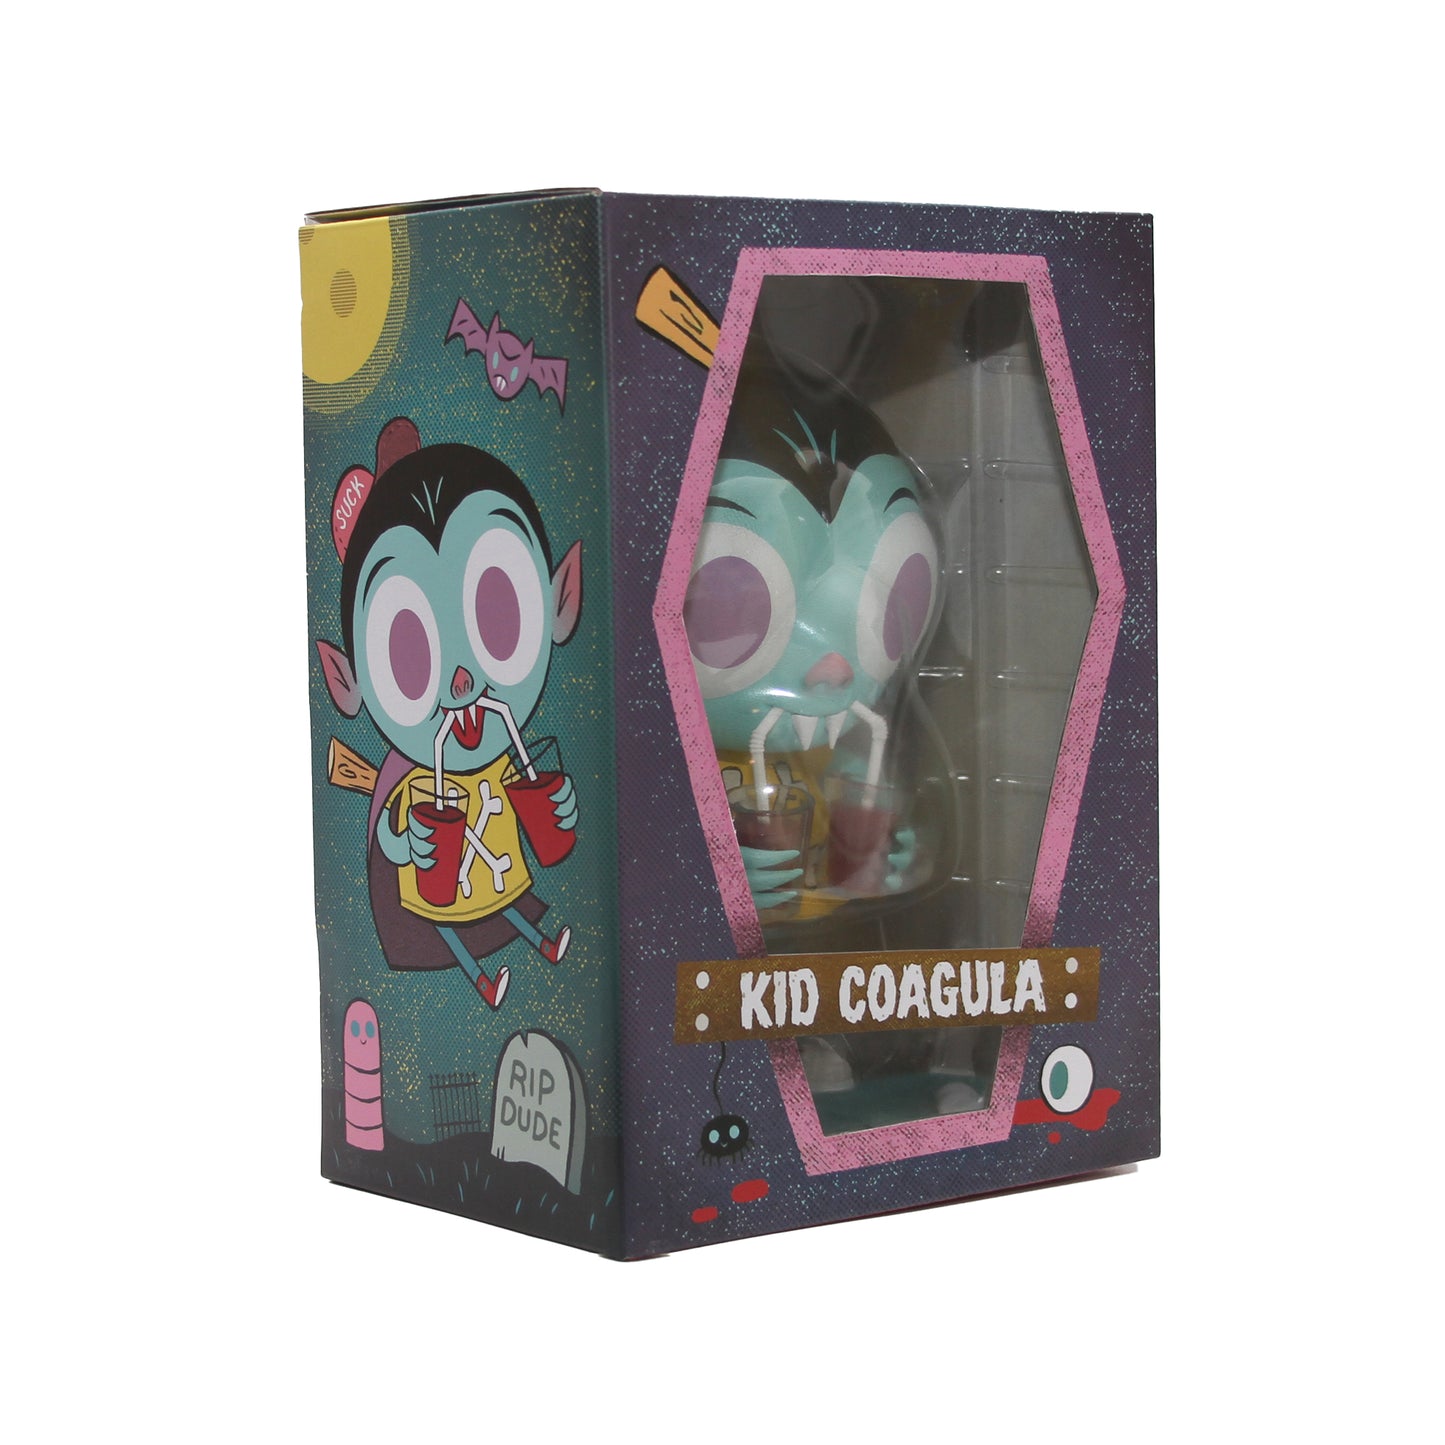 Kid Coagula vinyl figure